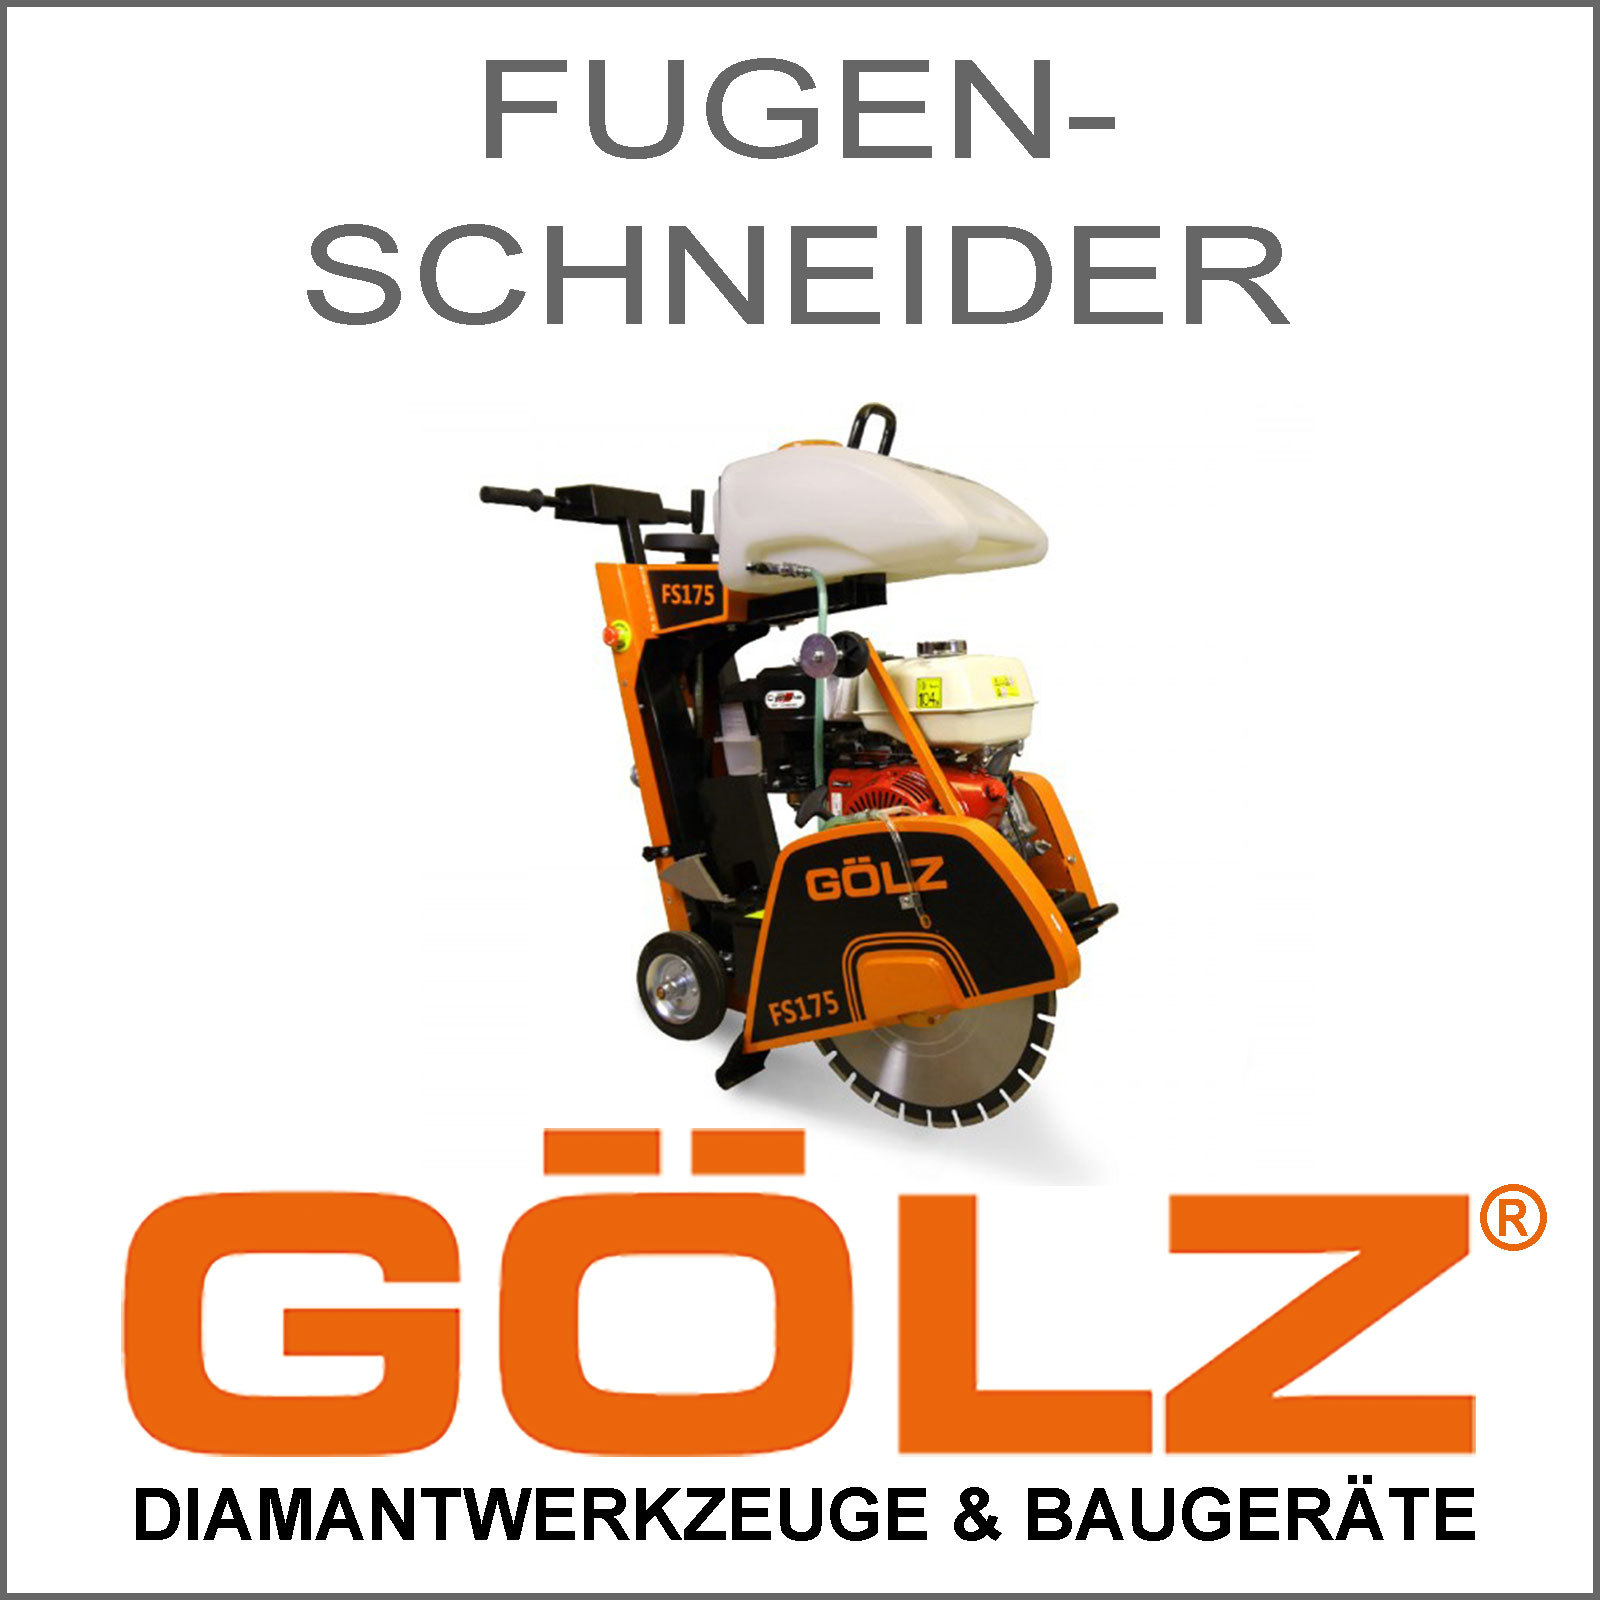 GOELZ-Fugenschneider